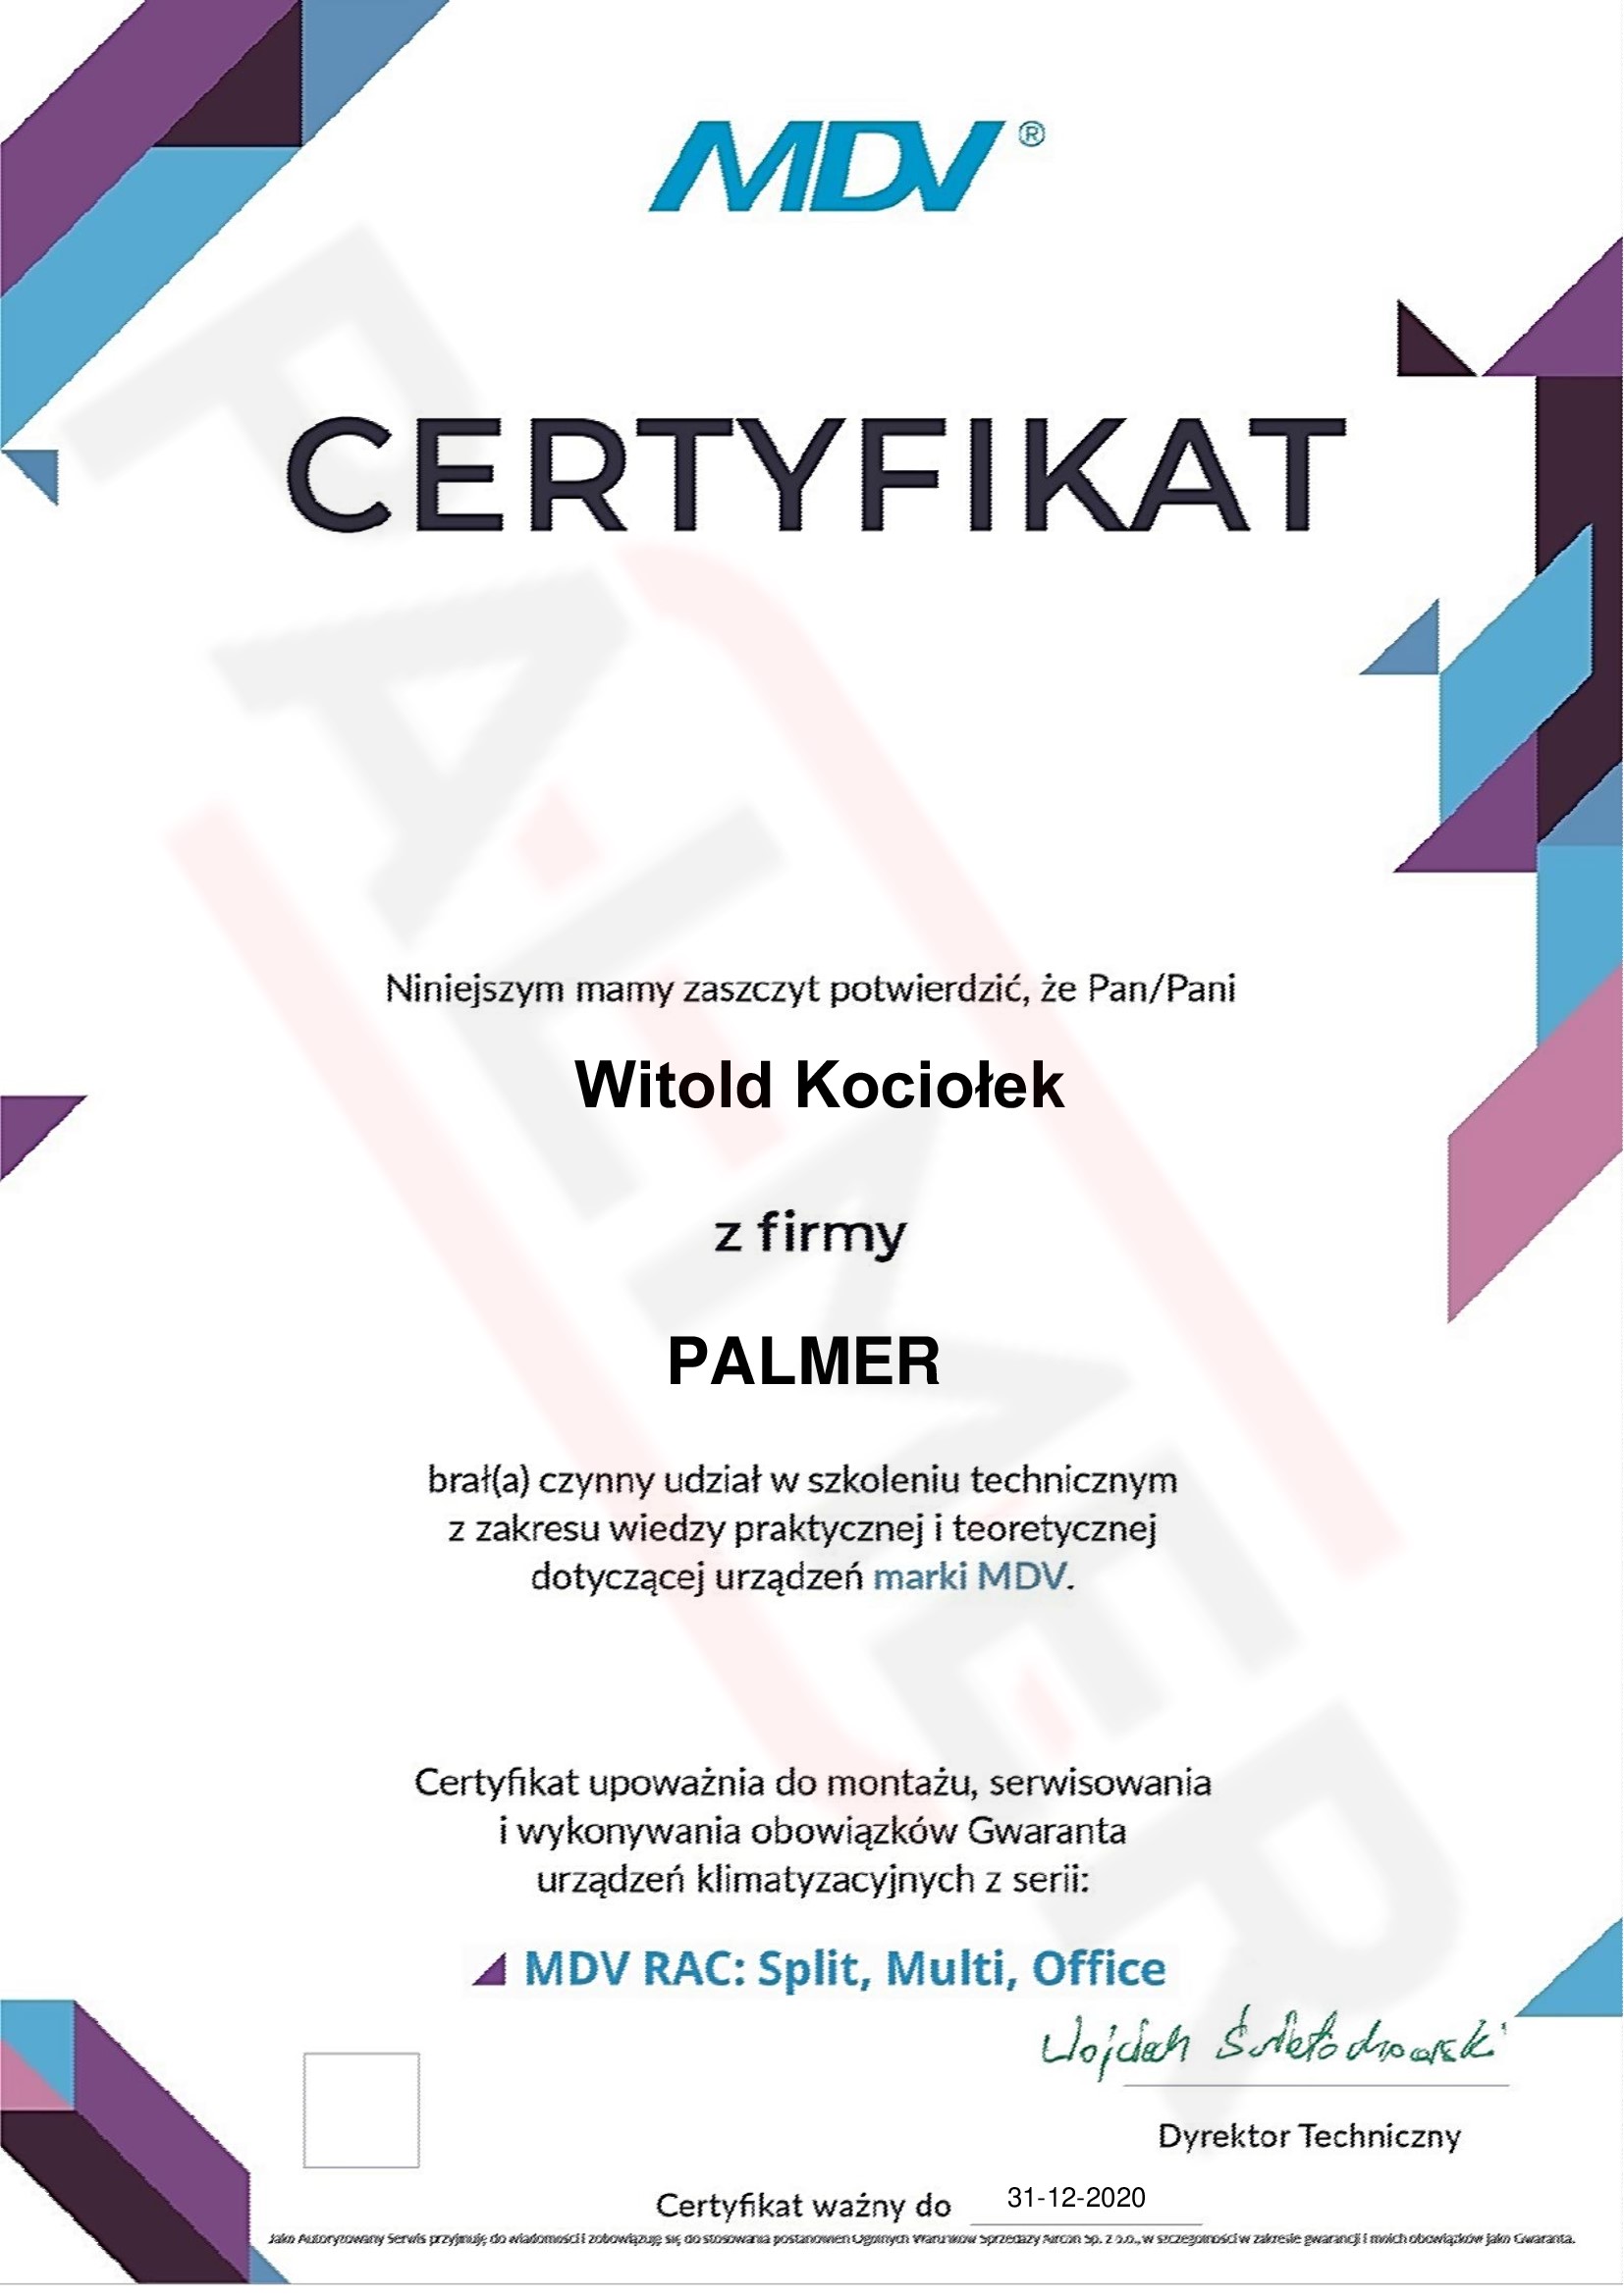 MDV_Certyfikat-2020-12-31 Palmer Klimatyzacja, Wentylacja, Pompy ciepła Kraków